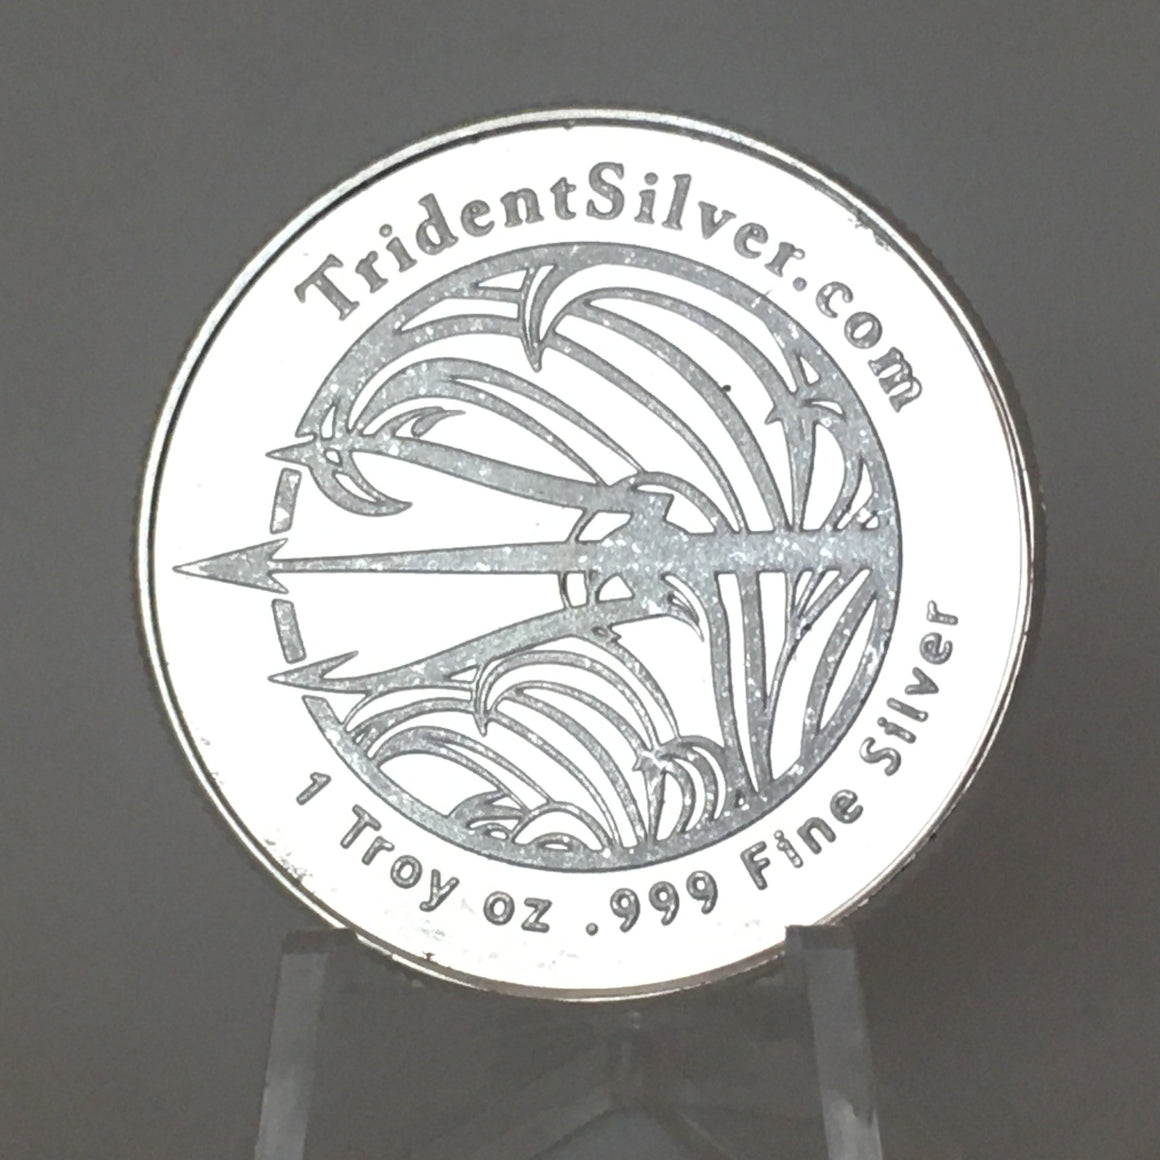 Trident Silver 1oz .999 Silver Round